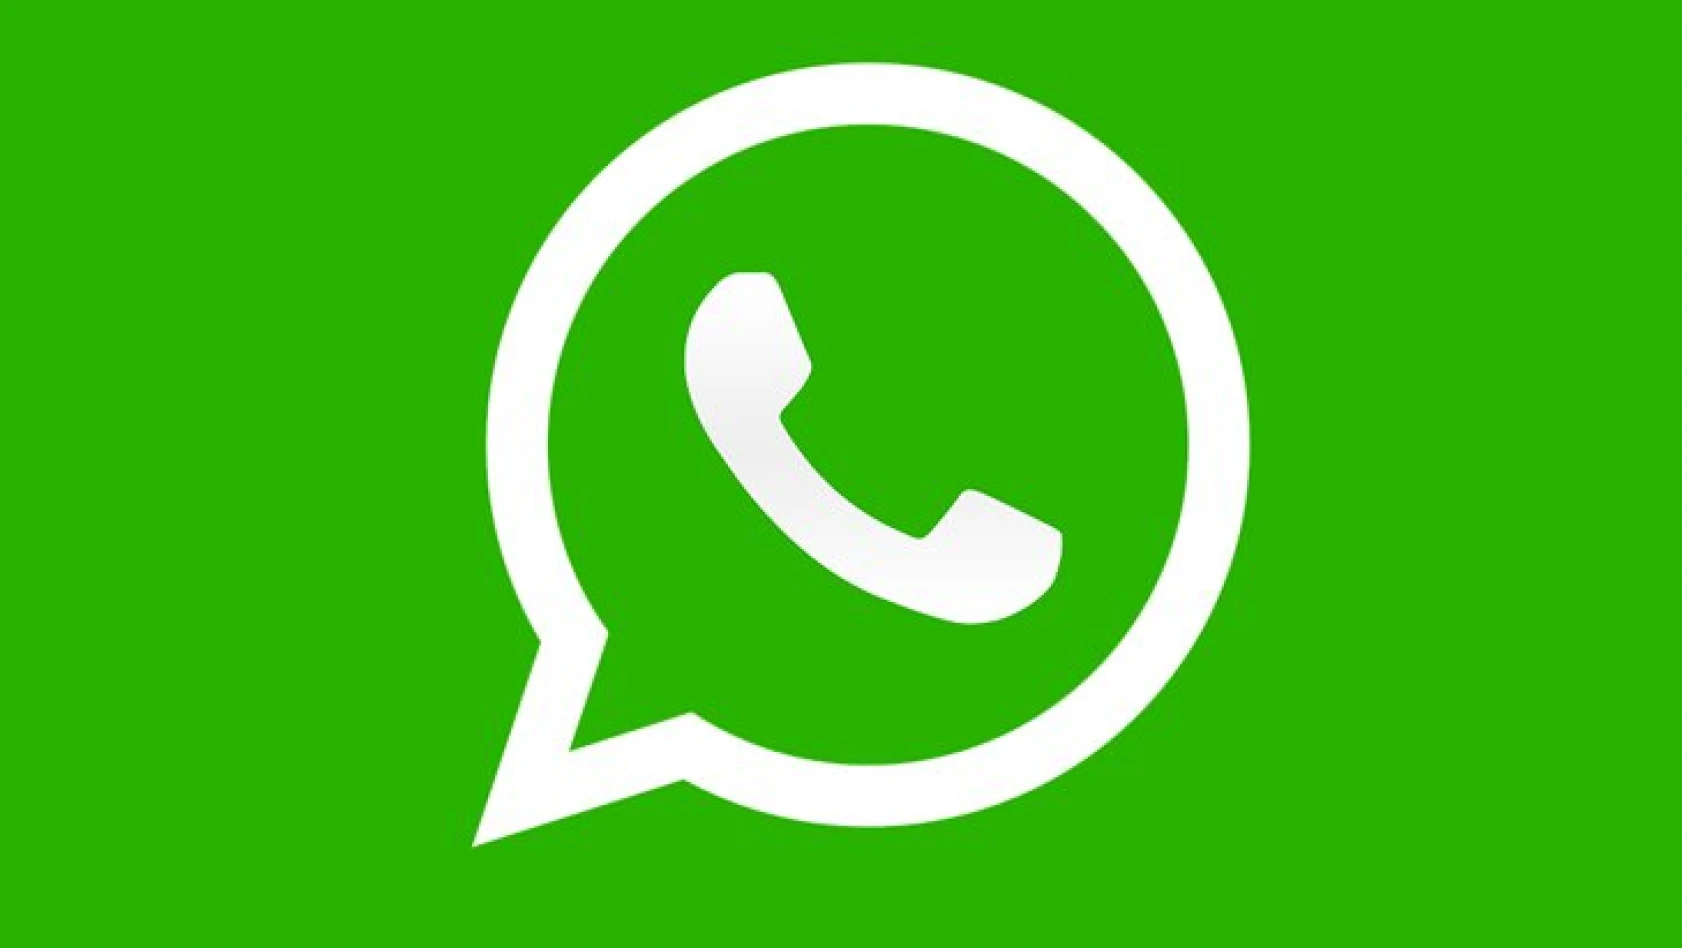 WhatsApp'tan ses getirecek yeni özellikler! Artık siz değil, onlar konuşacak!